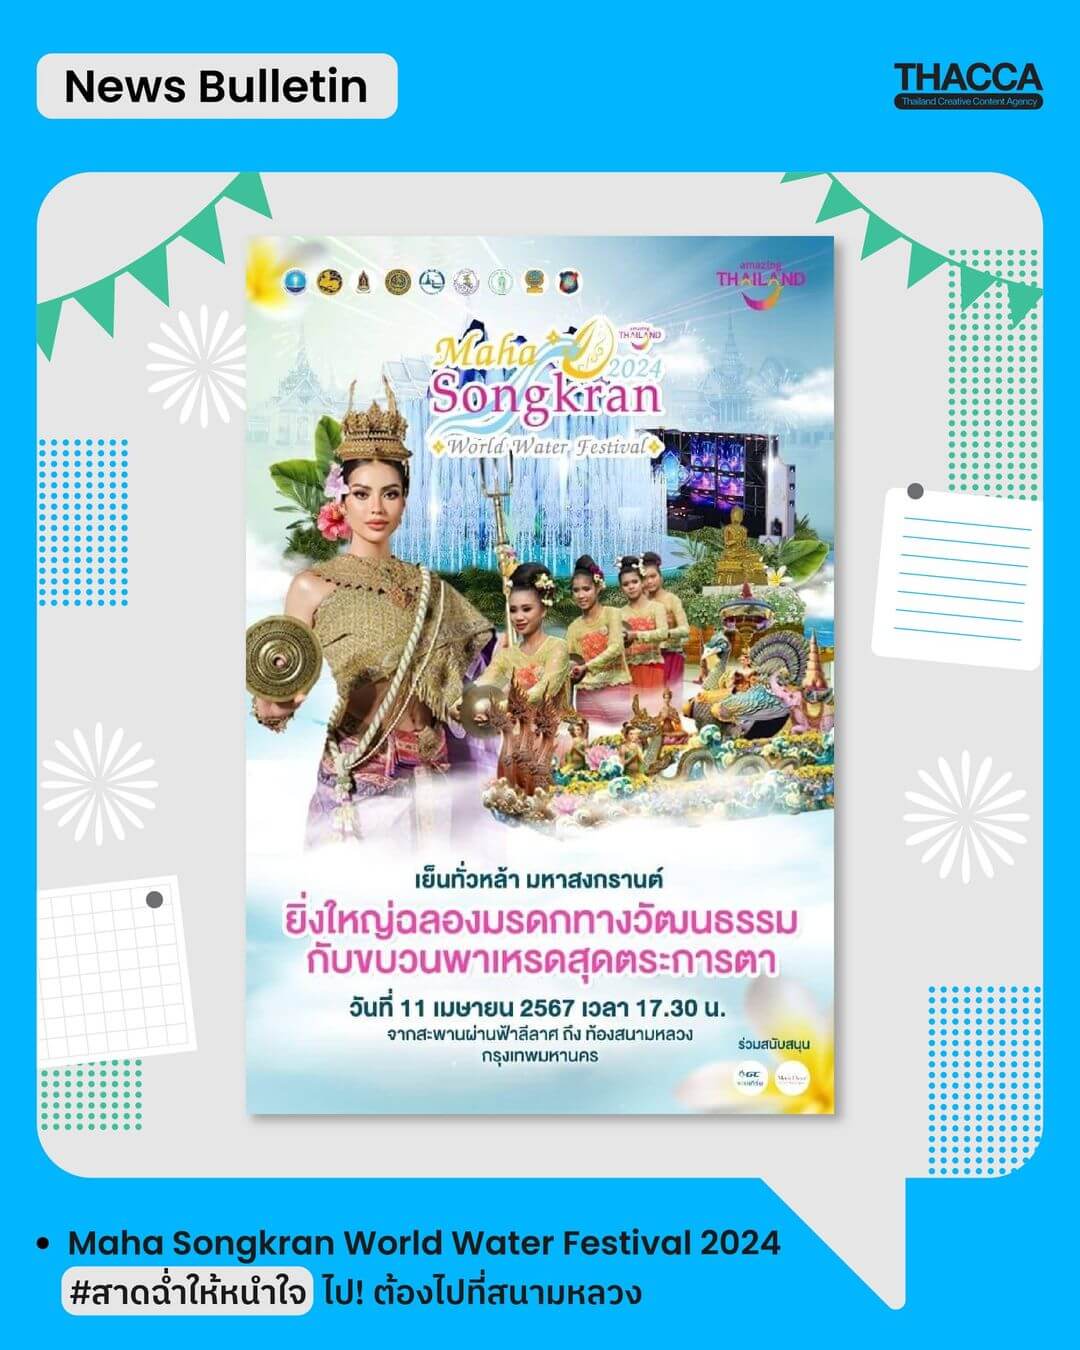 สาดฉ่ำให้หนำใจ!  THACCA ชวนทุกท่านไปสาด “ความมันส์” ให้มันสะใจกับงาน Maha Songkran World Water Festival 2024